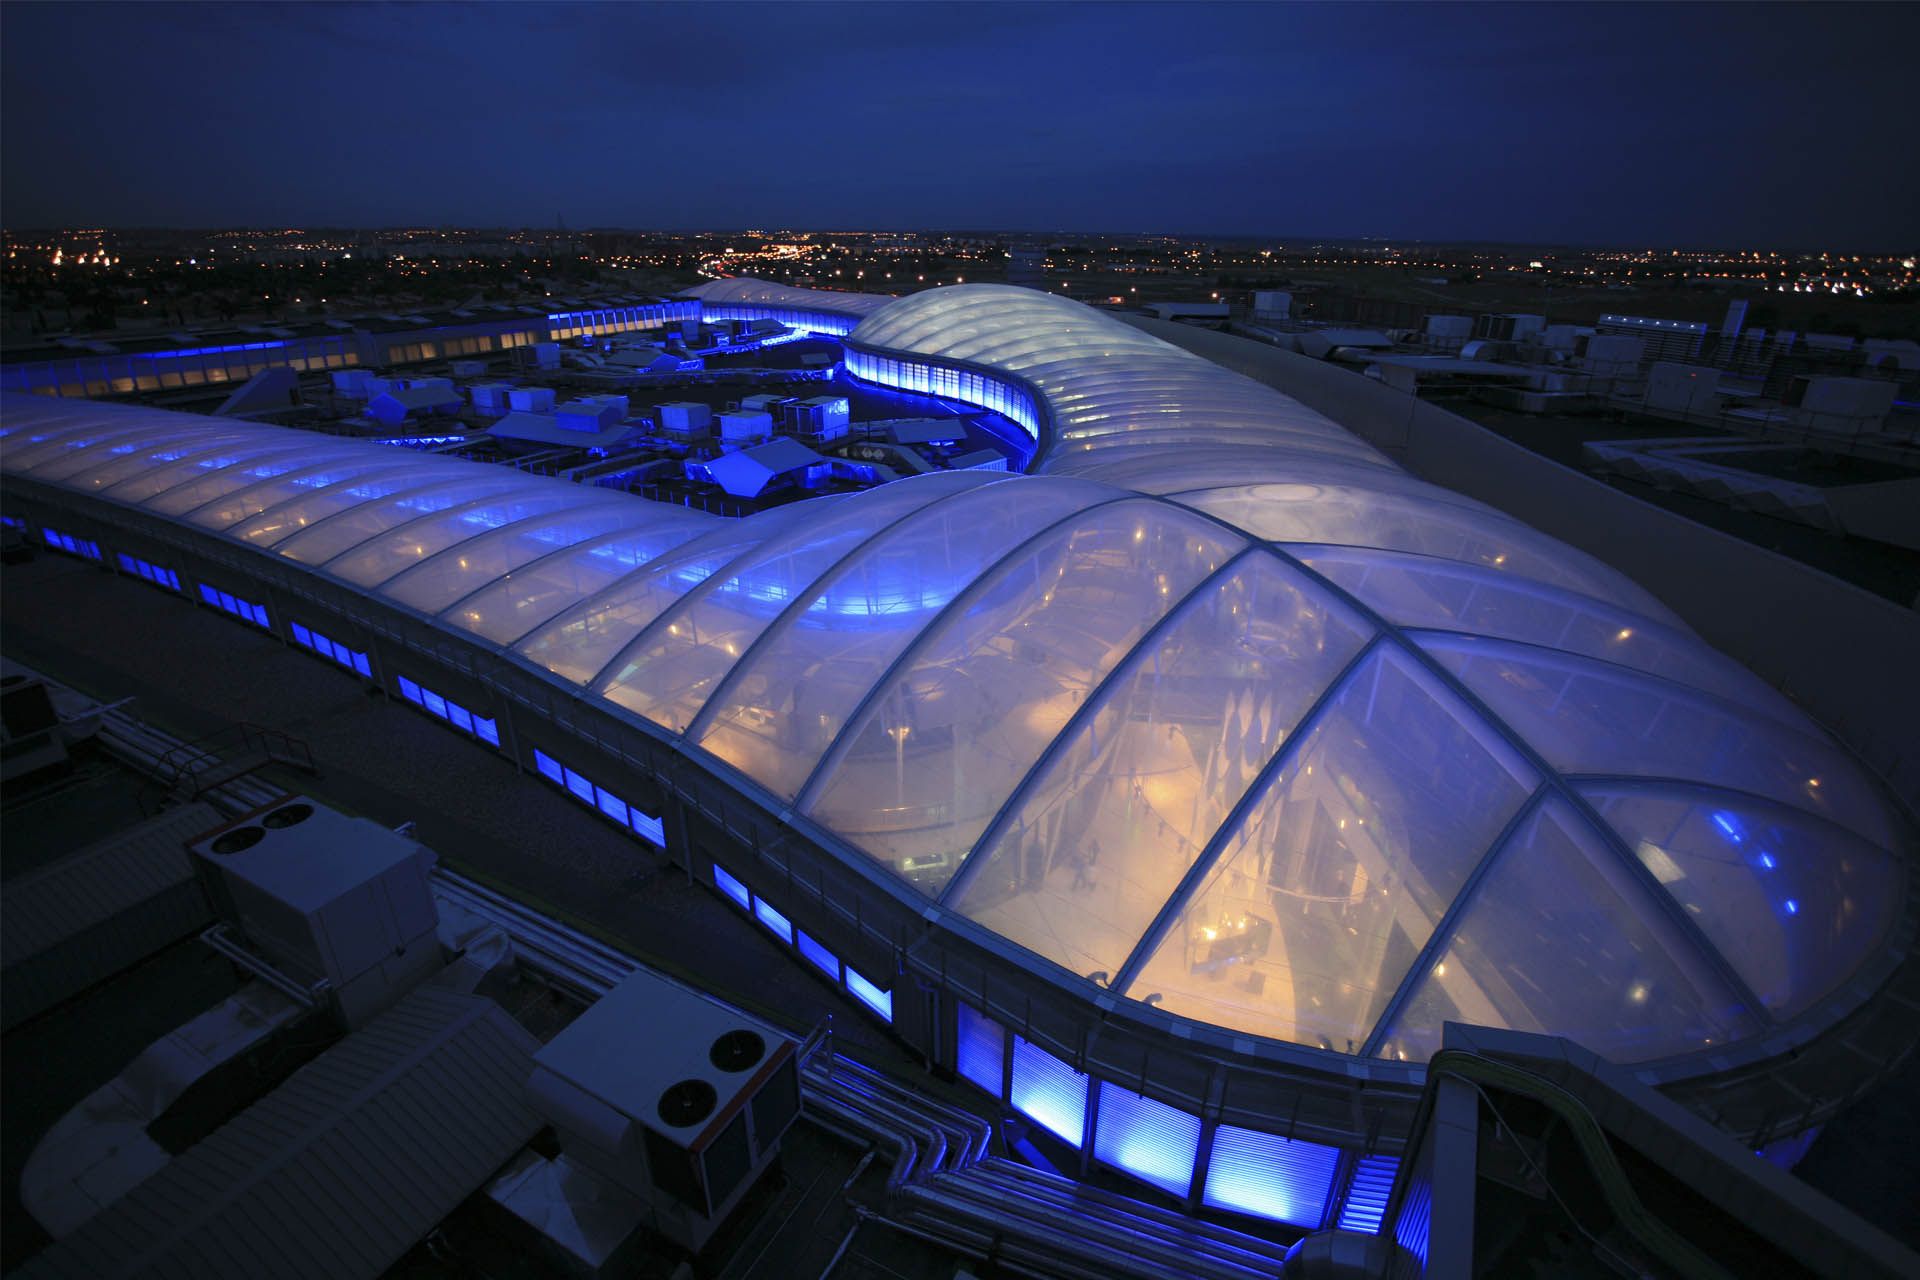 Vista aérea de la cubierta etfe transparente de noche iluminada en azul del centro comercial islazul